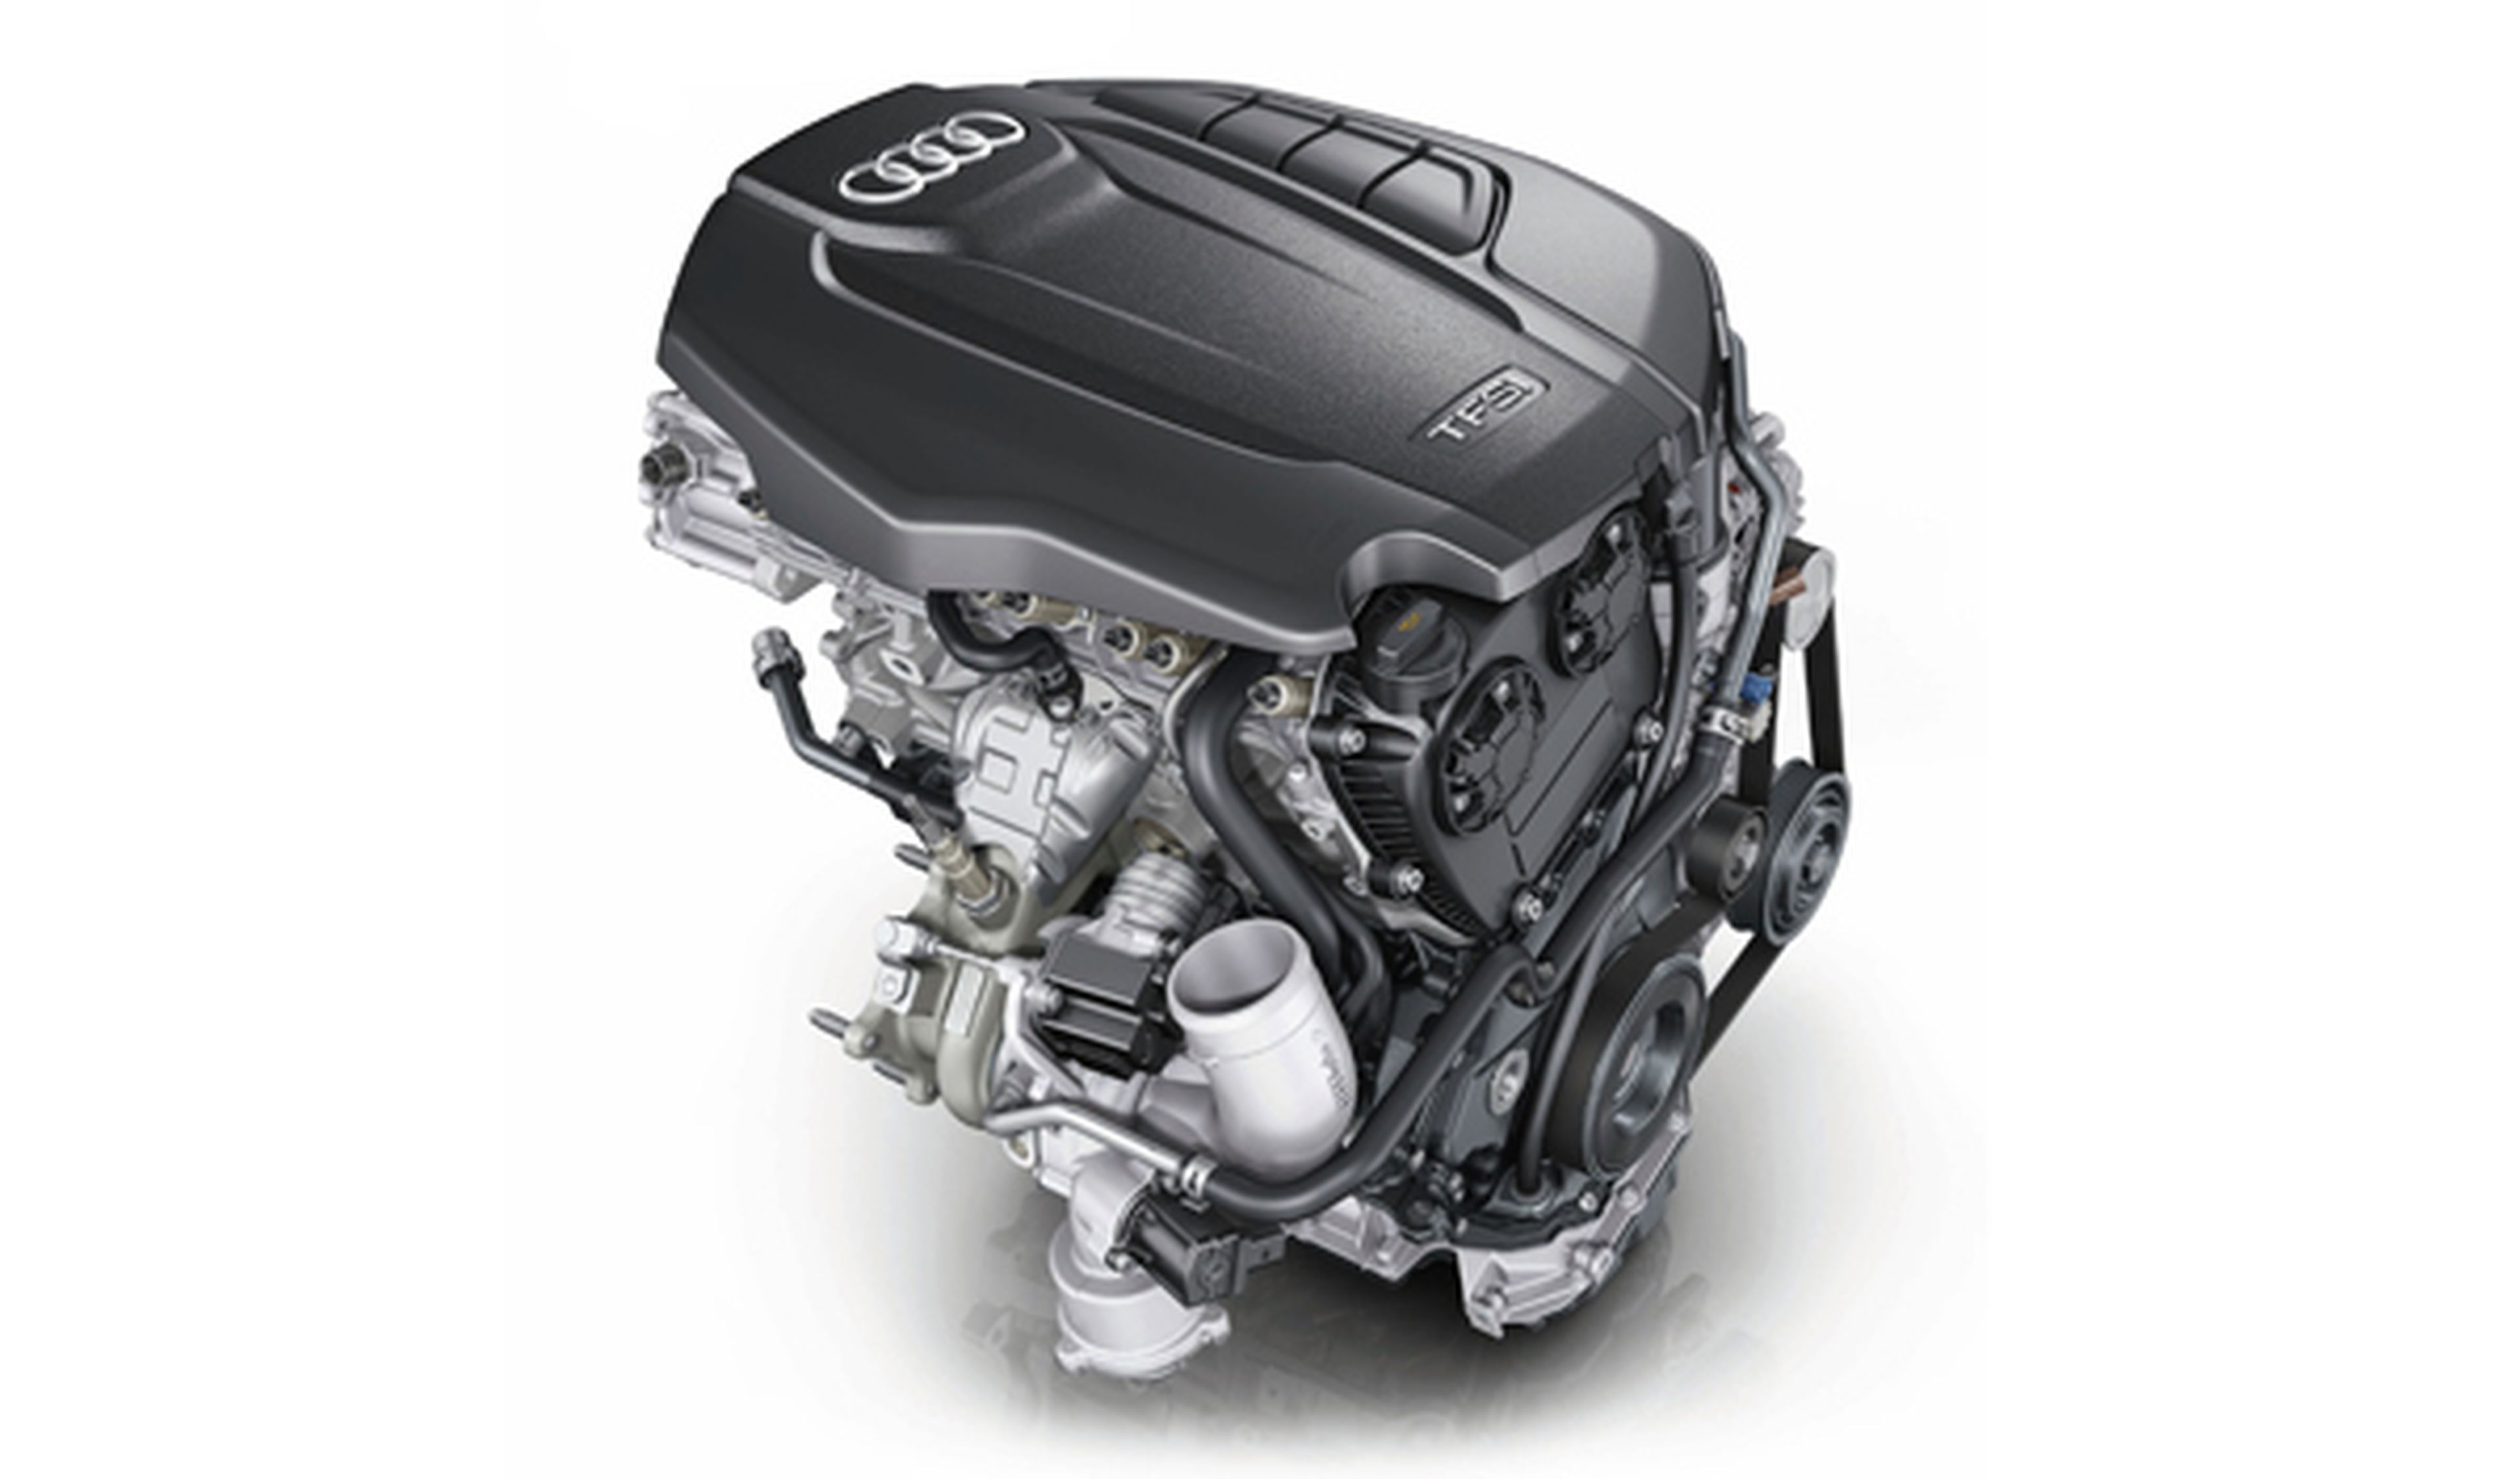 Audi estrena el nuevo motor 1.8 TFSI